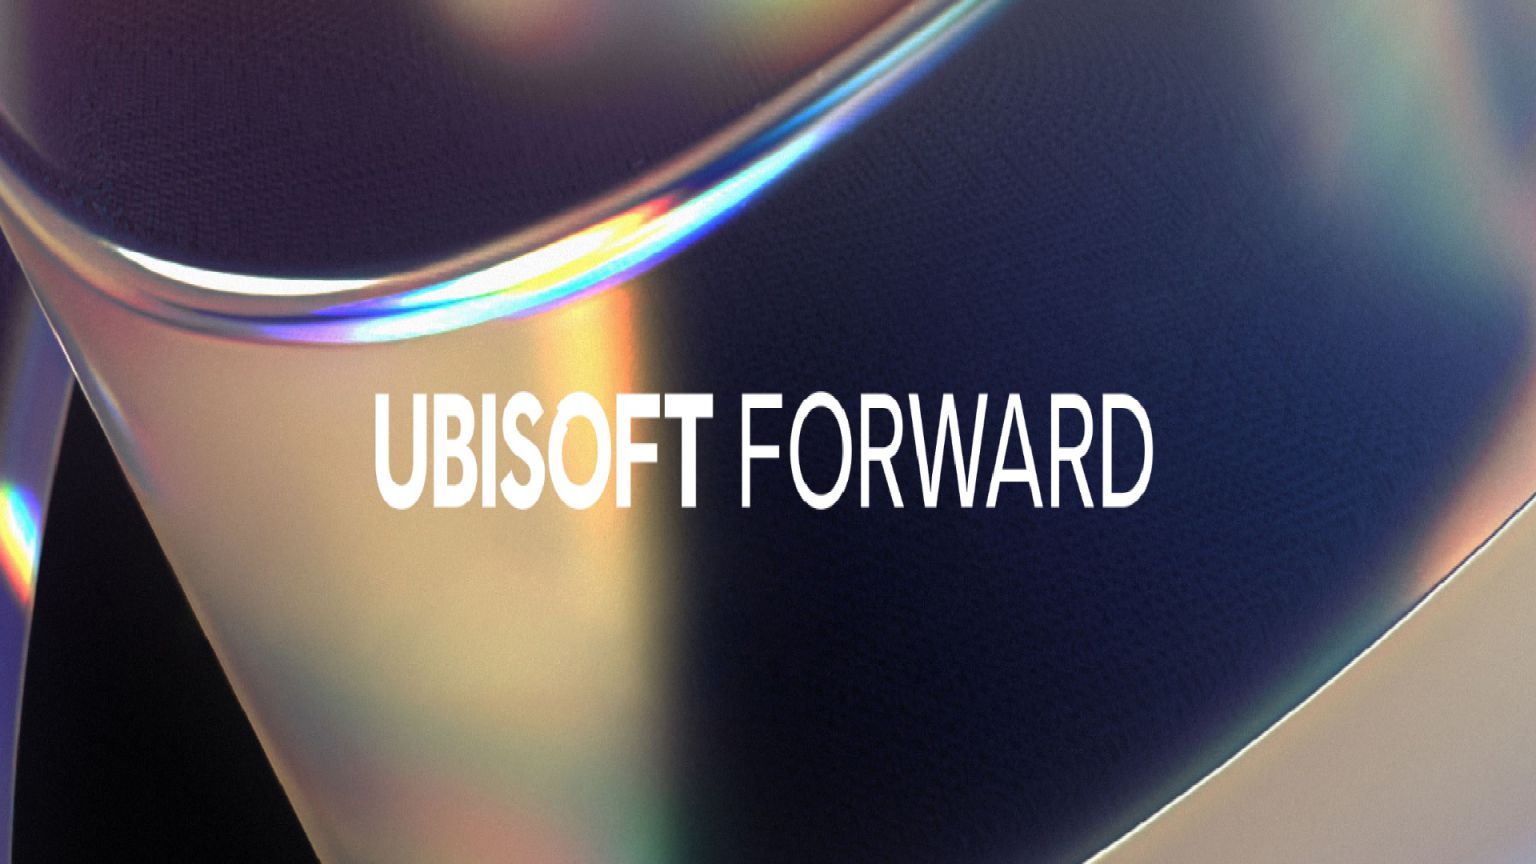 Ubisoft-Forward